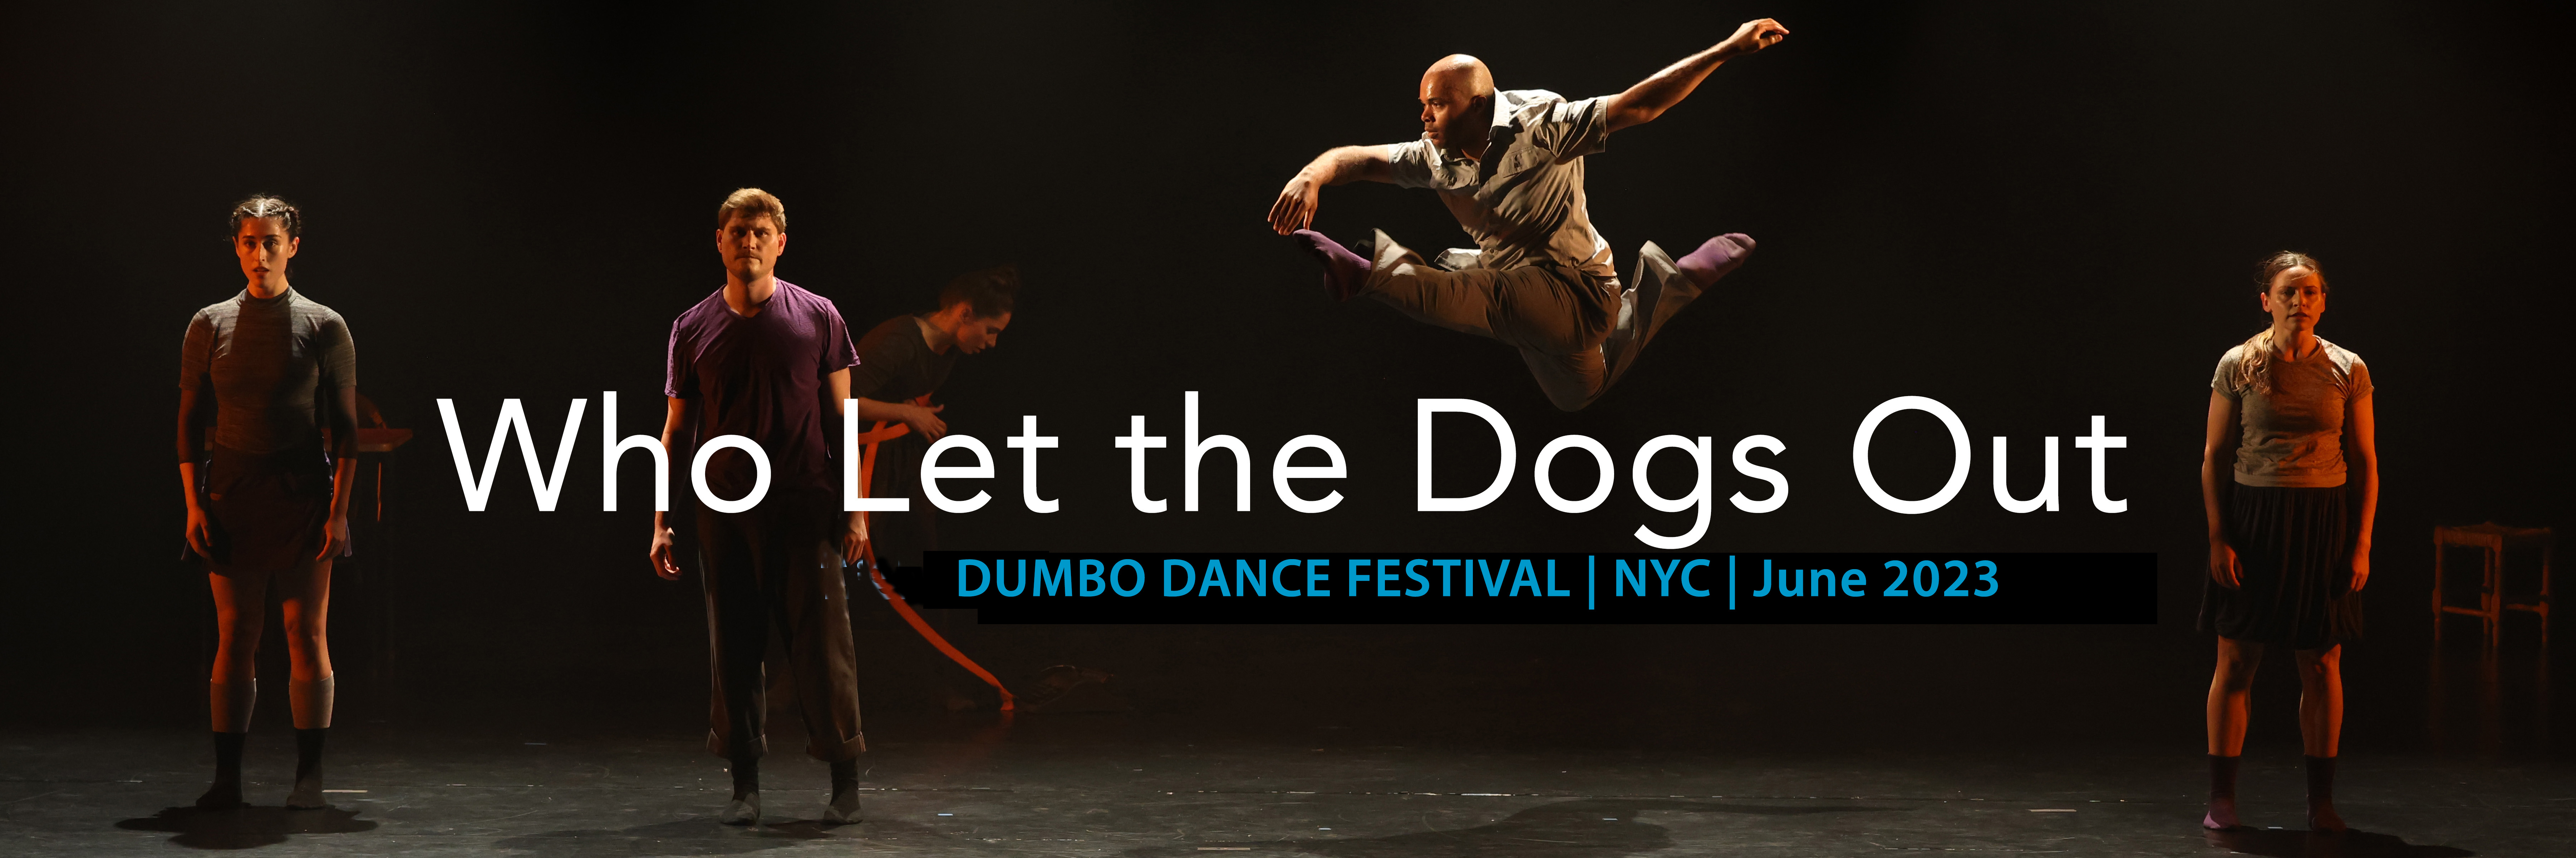 Dumbo Dance Festival 2023